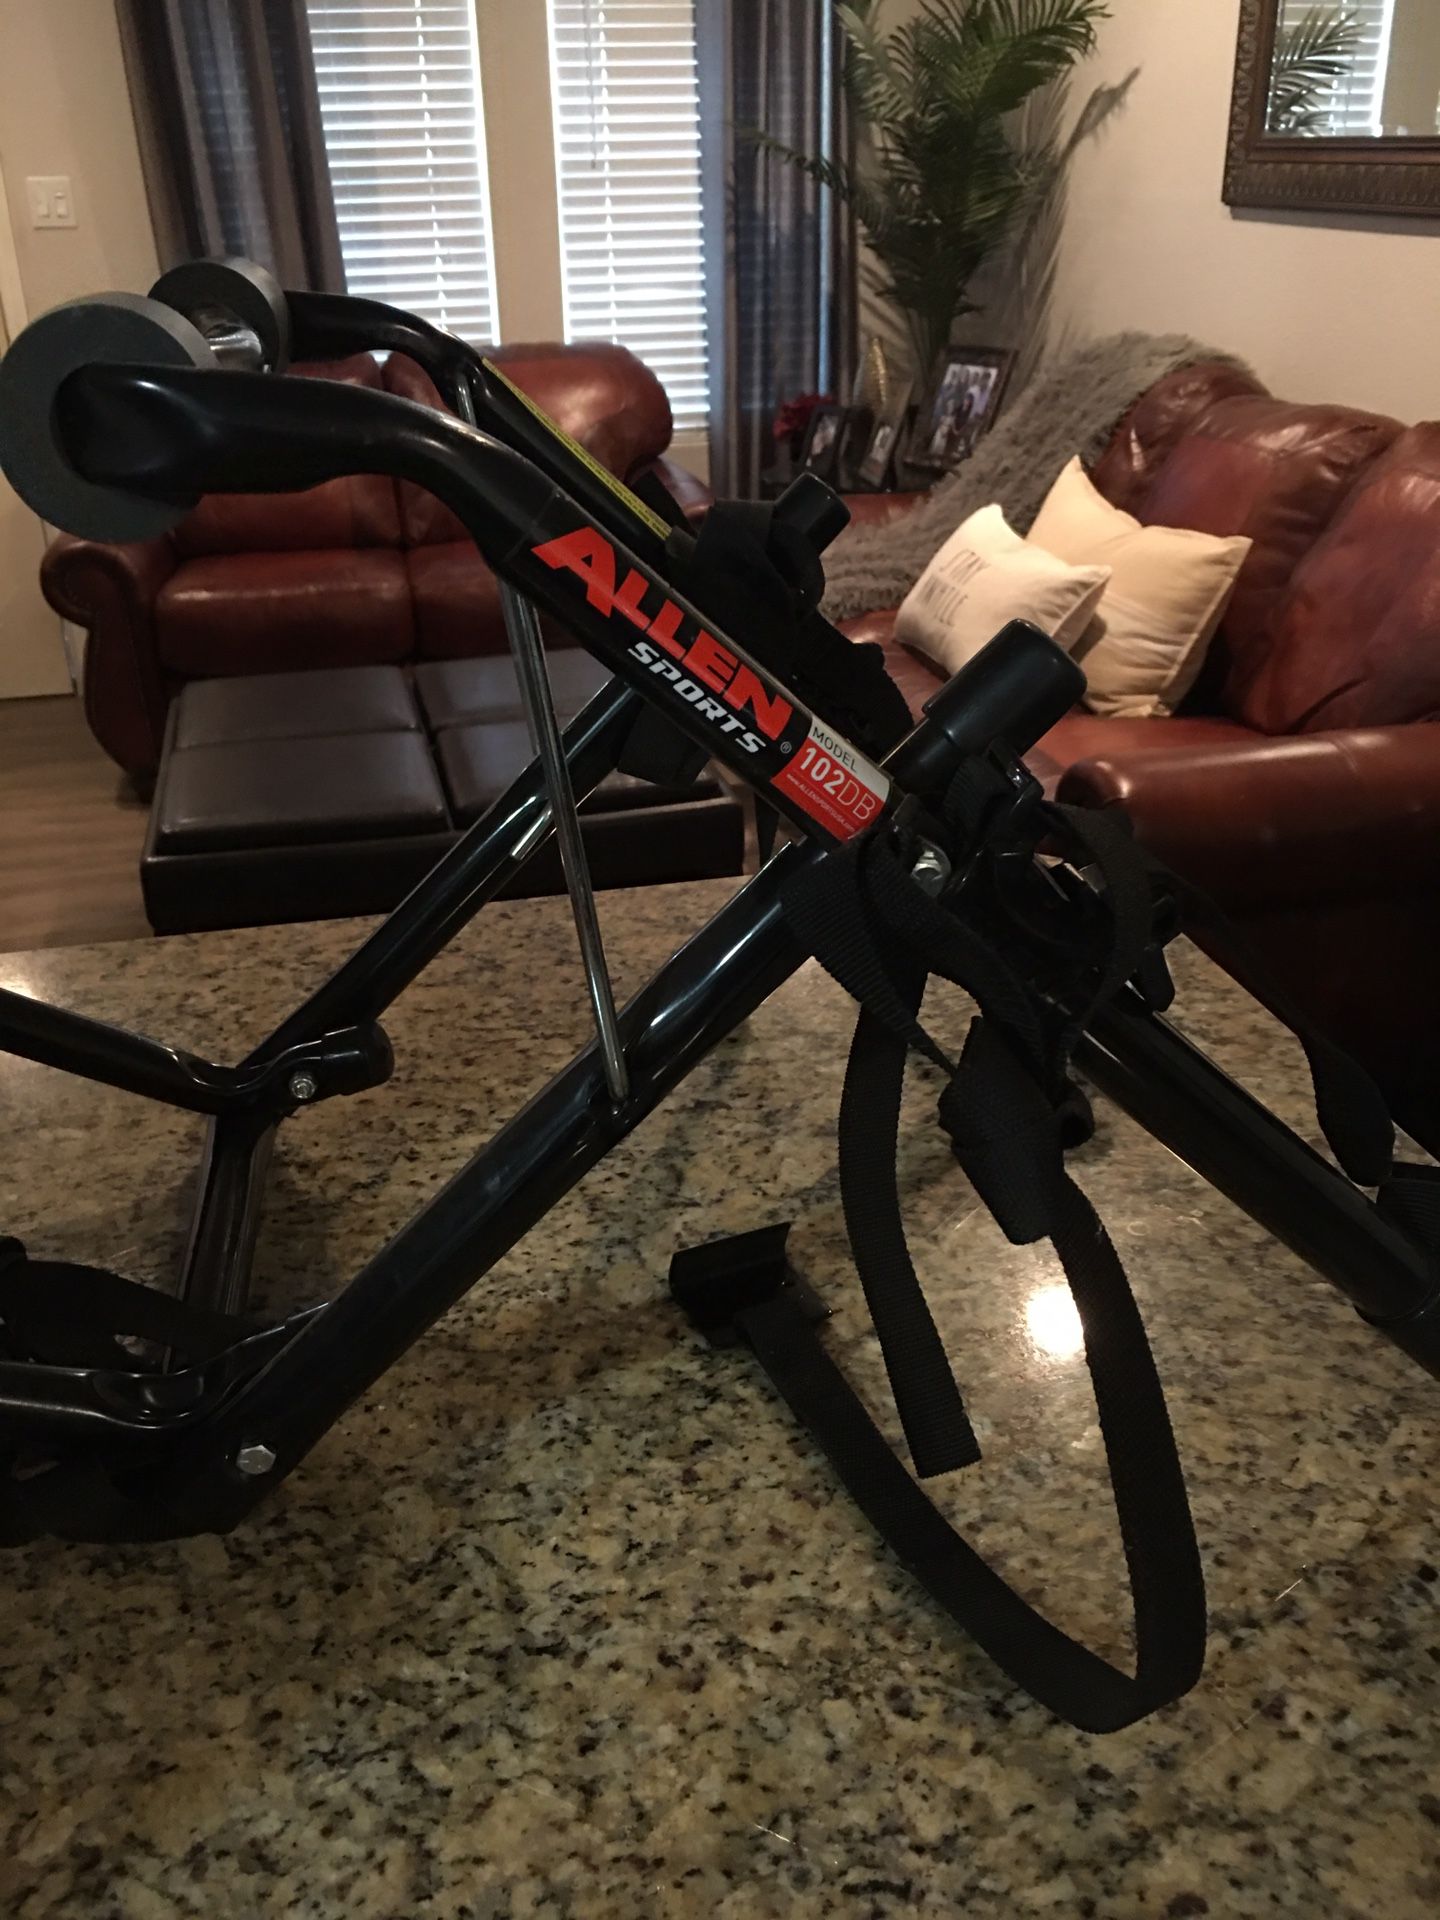 Trunk mounted bike rack